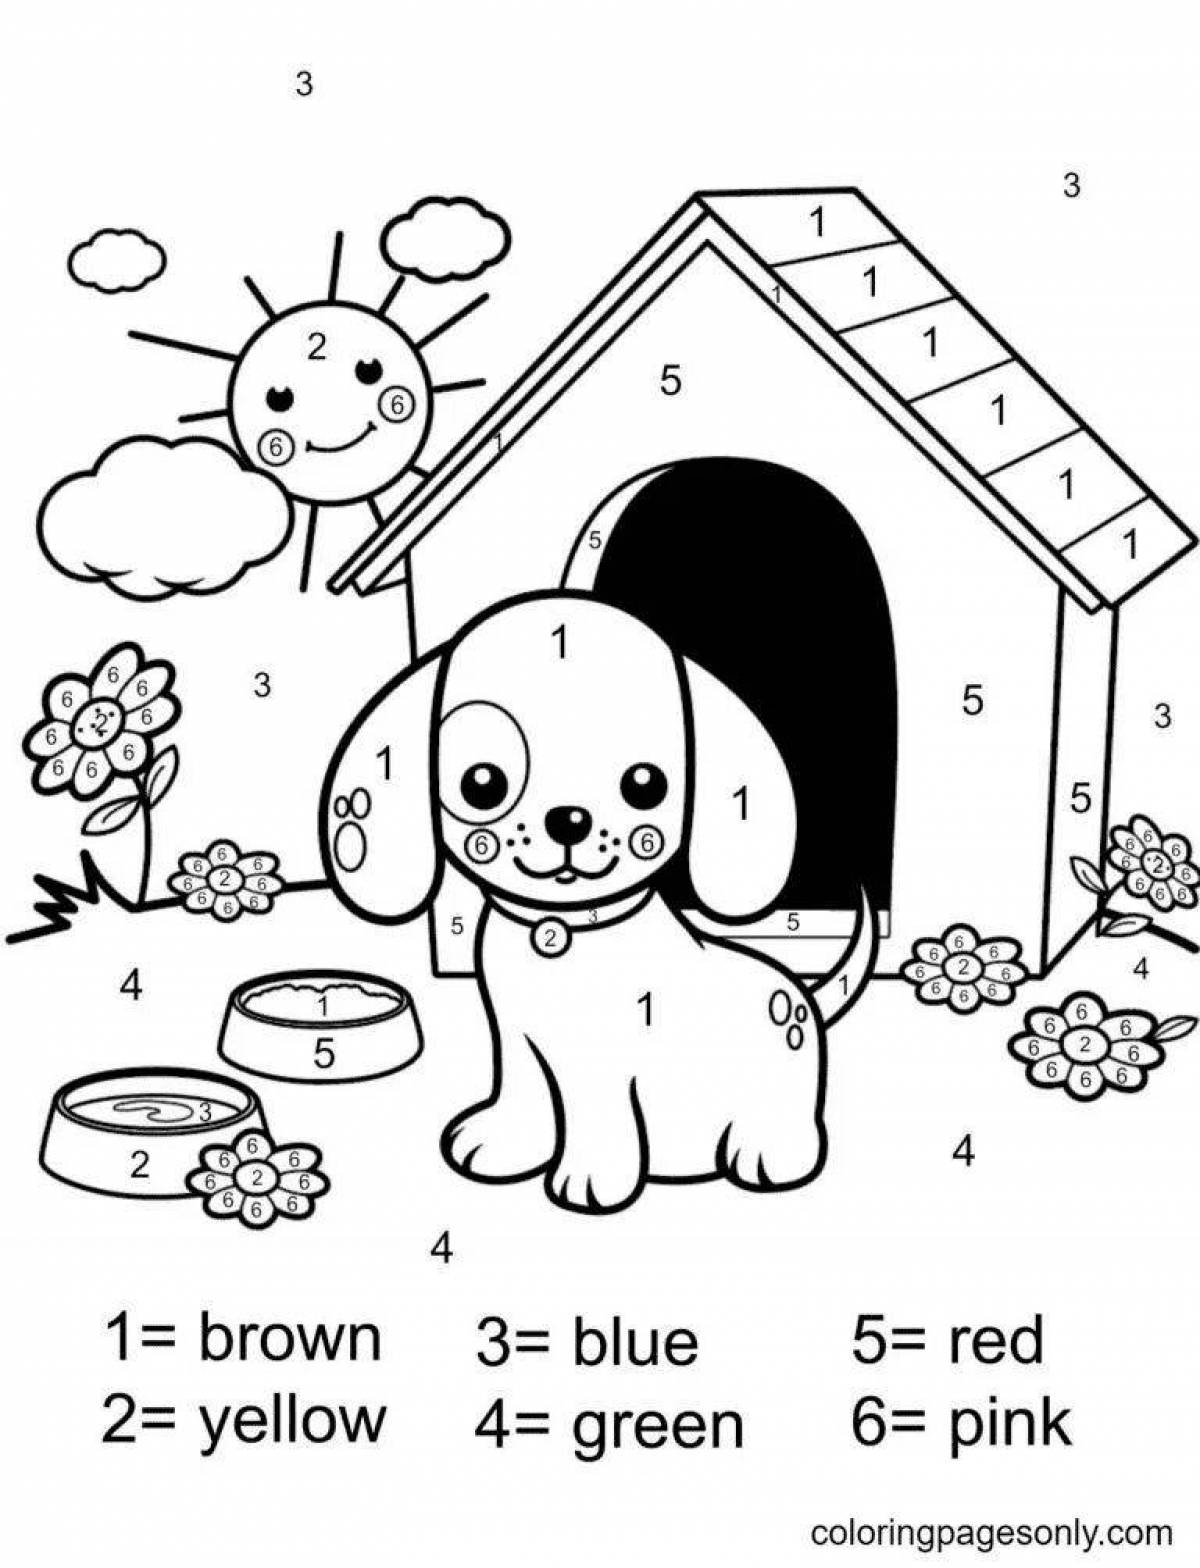 Творческая раскраска собак по номерам